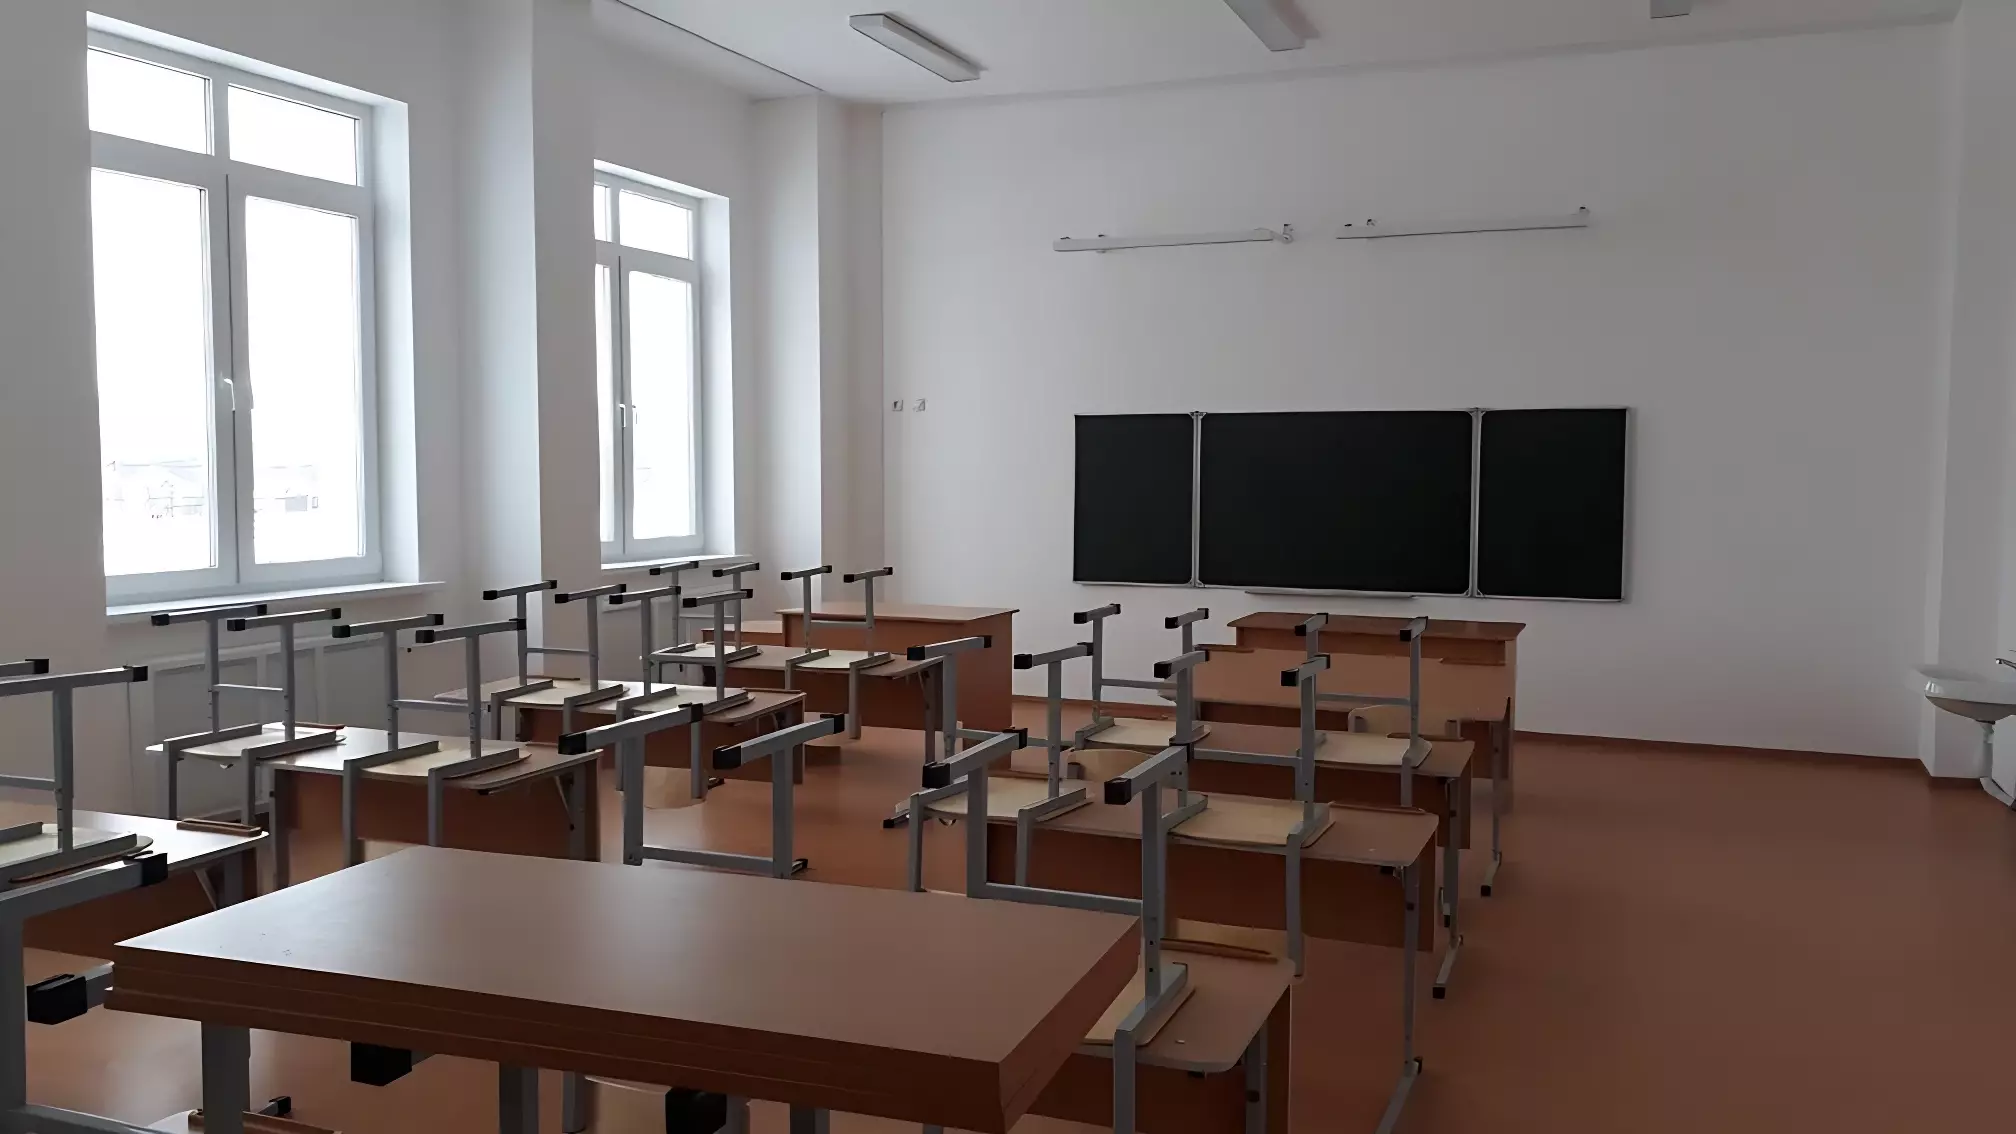 Гладков высказался о трагедии с расстрелом школьников в Брянске